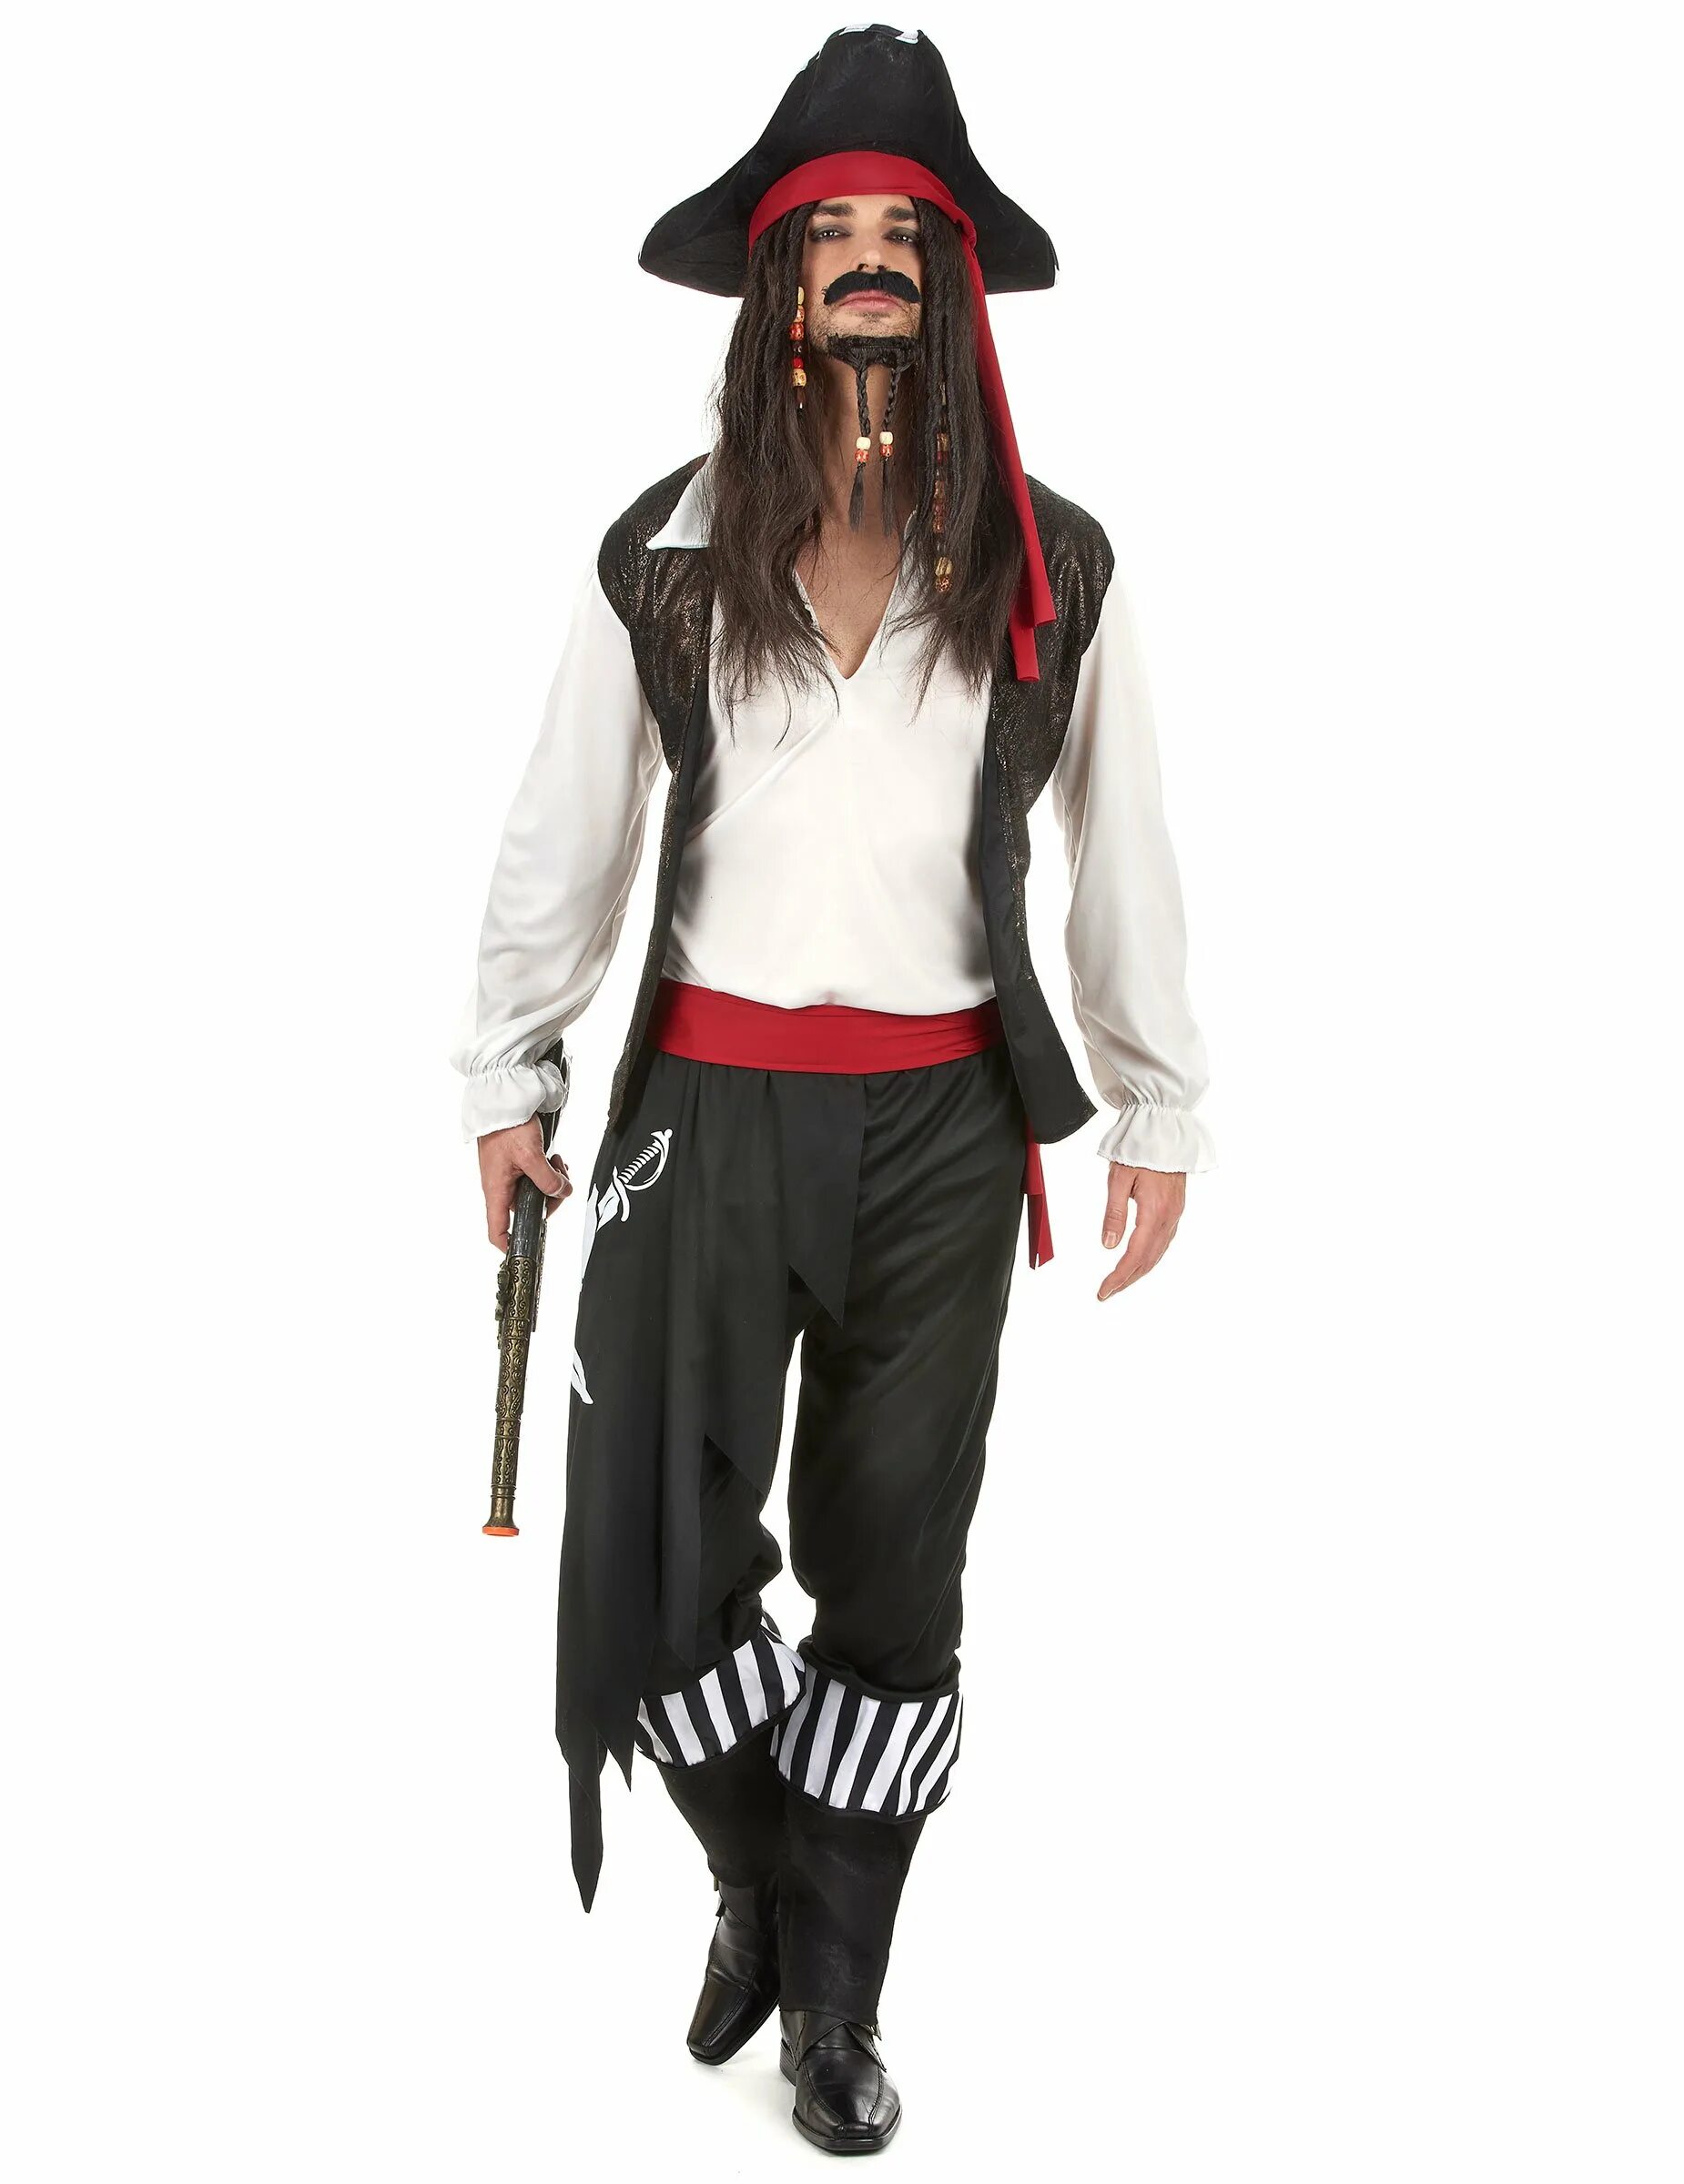 Пират костюм. Костюм пирата. Пиратский костюм. Костюм пирата взрослый. Образ пирата.